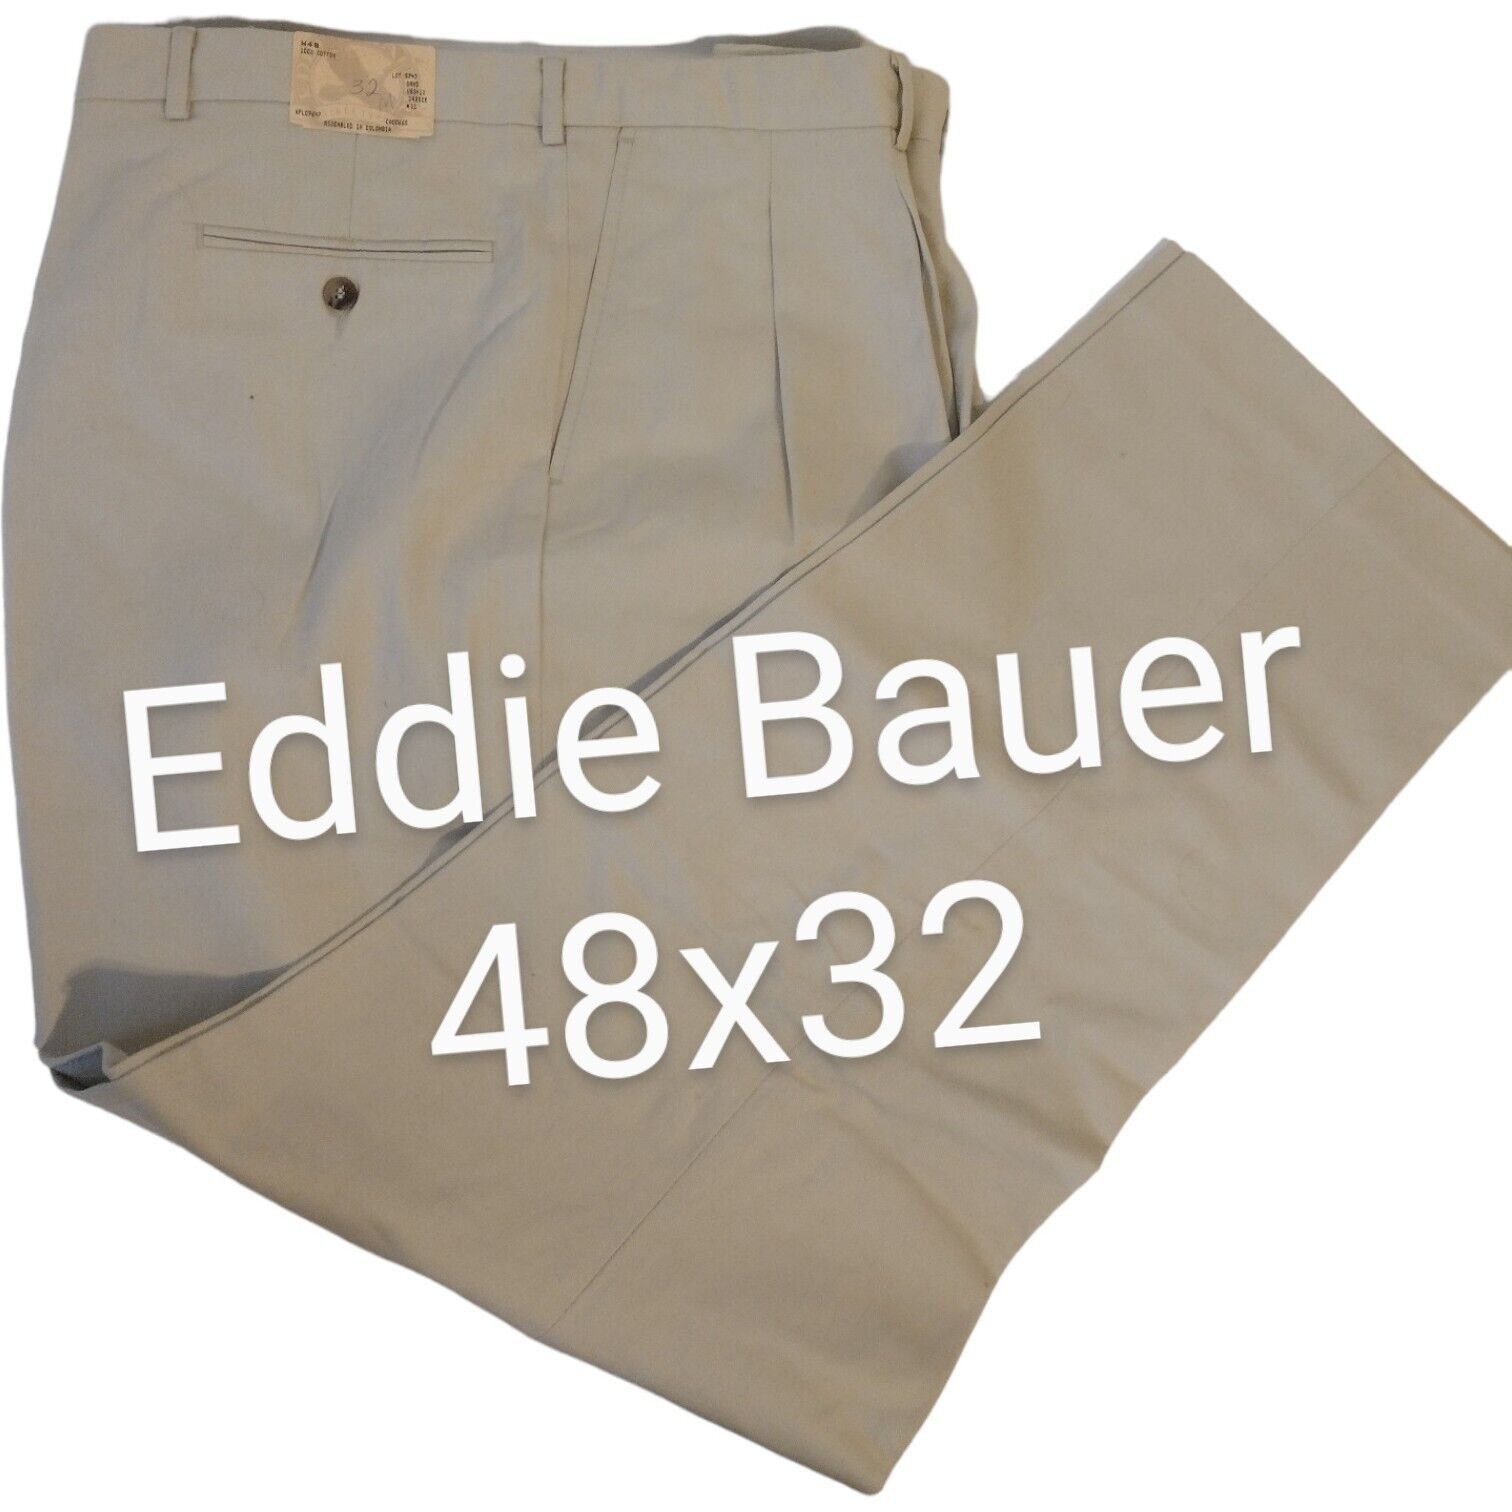 Eddie Bauer 48x32 New Eddie Bauer Men's Pants Chino's Khaki Pleated ...